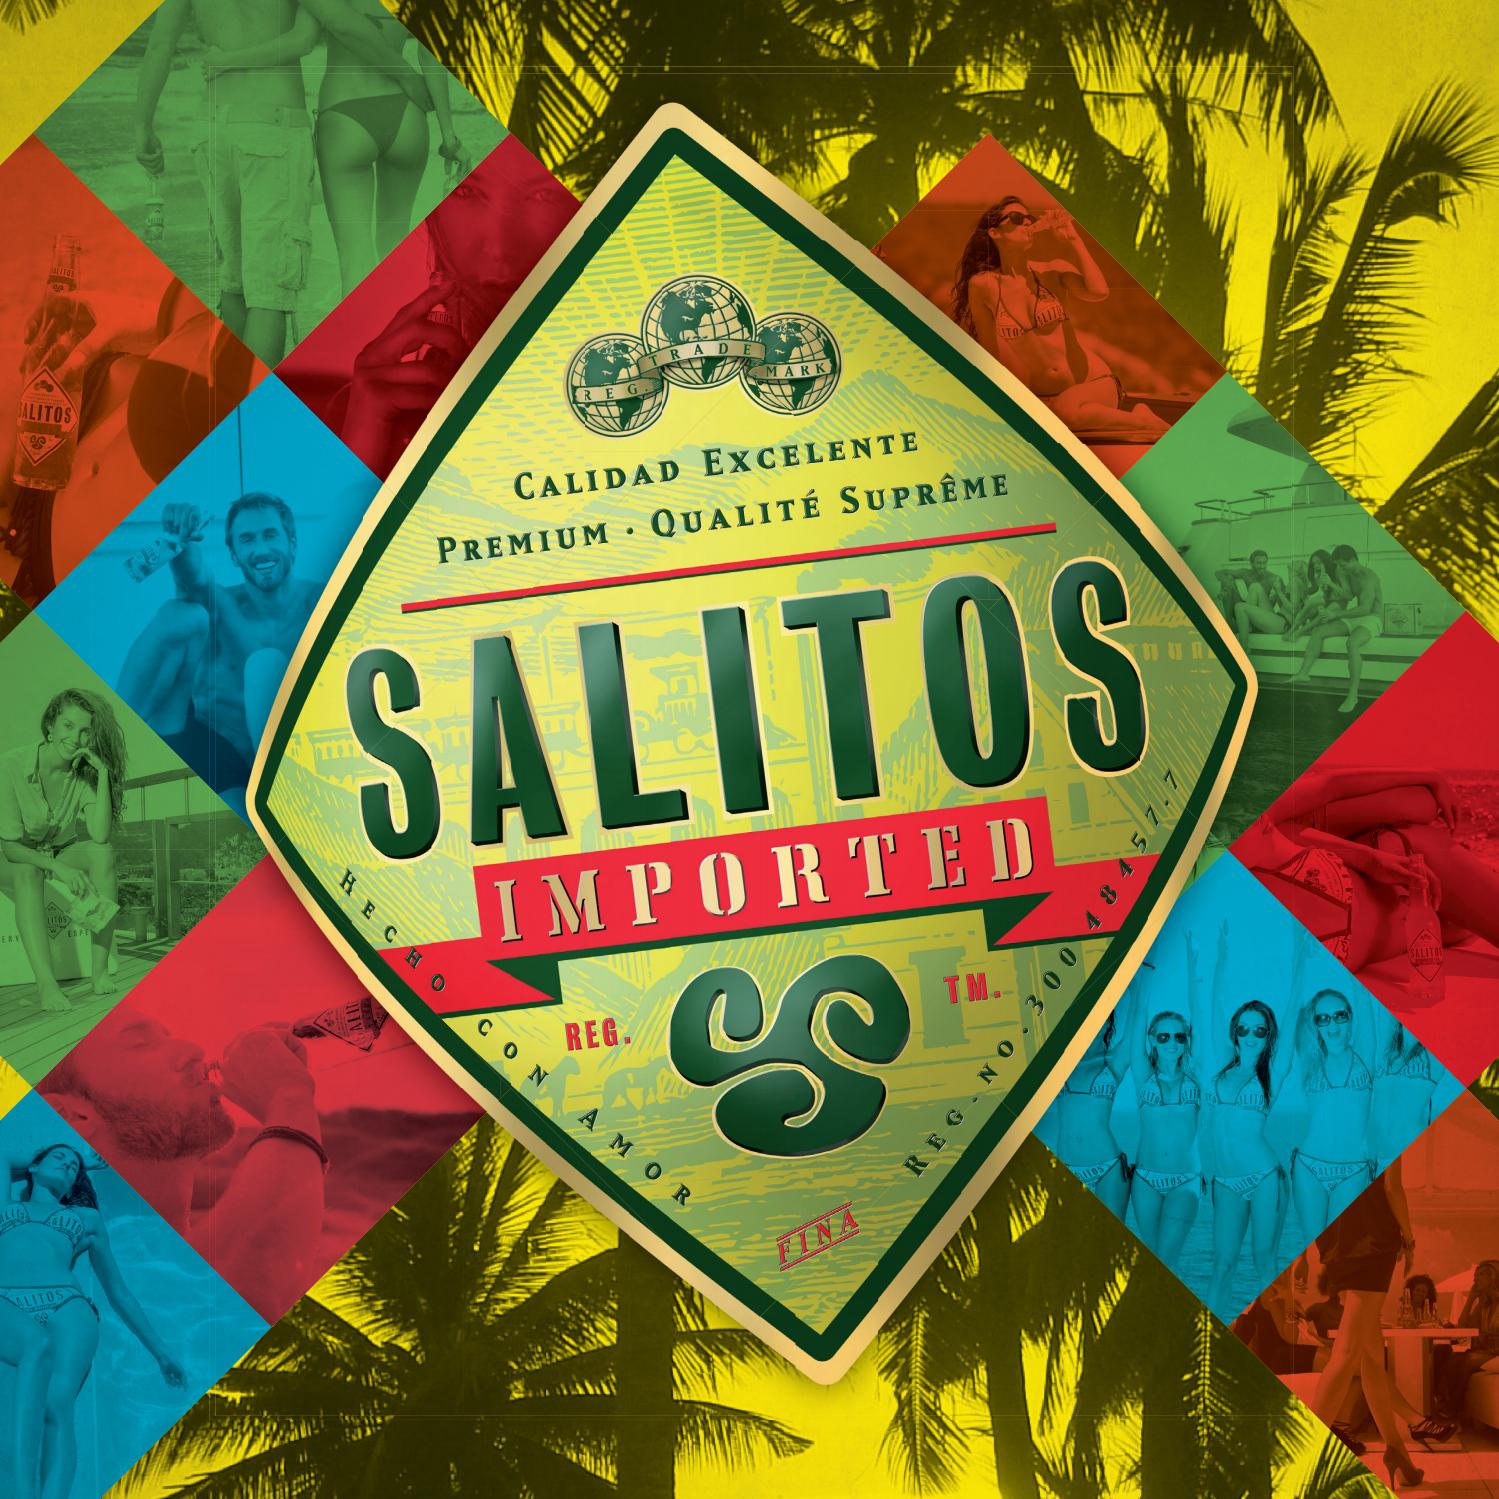 Salitos Mix 0,33l - Original Tequila - Blue - Pink  & Ice